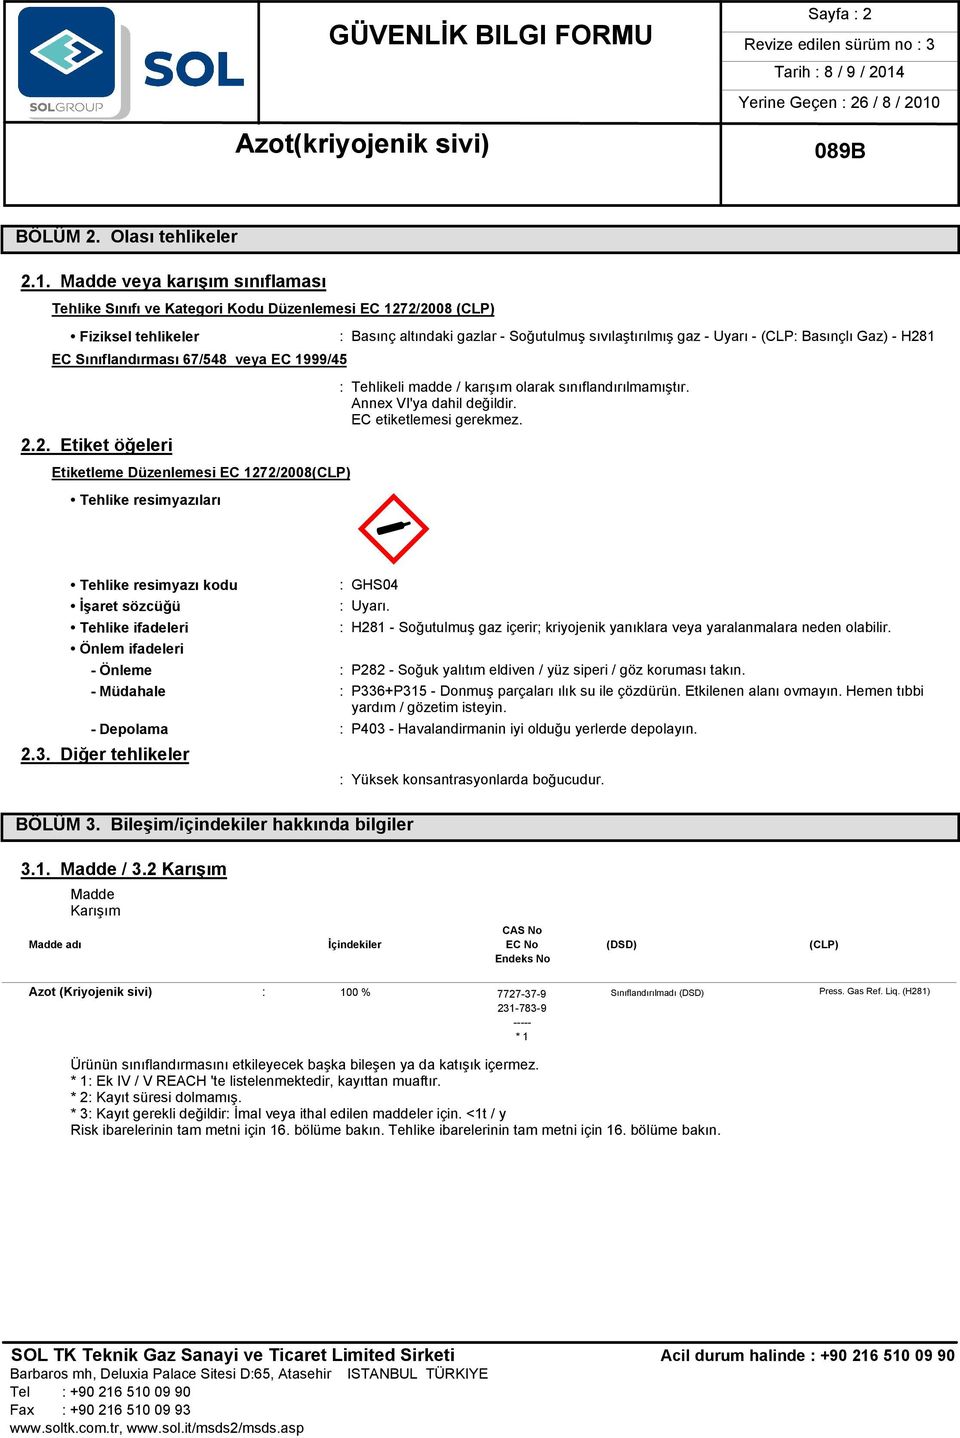 sıvılaştırılmış gaz - Uyarı - (CLP: Basınçlı Gaz) - H281 : Tehlikeli madde / karışım olarak sınıflandırılmamıştır. Annex VI'ya dahil değildir. EC etiketlemesi gerekmez. M«: GHS04 : Uyarı.